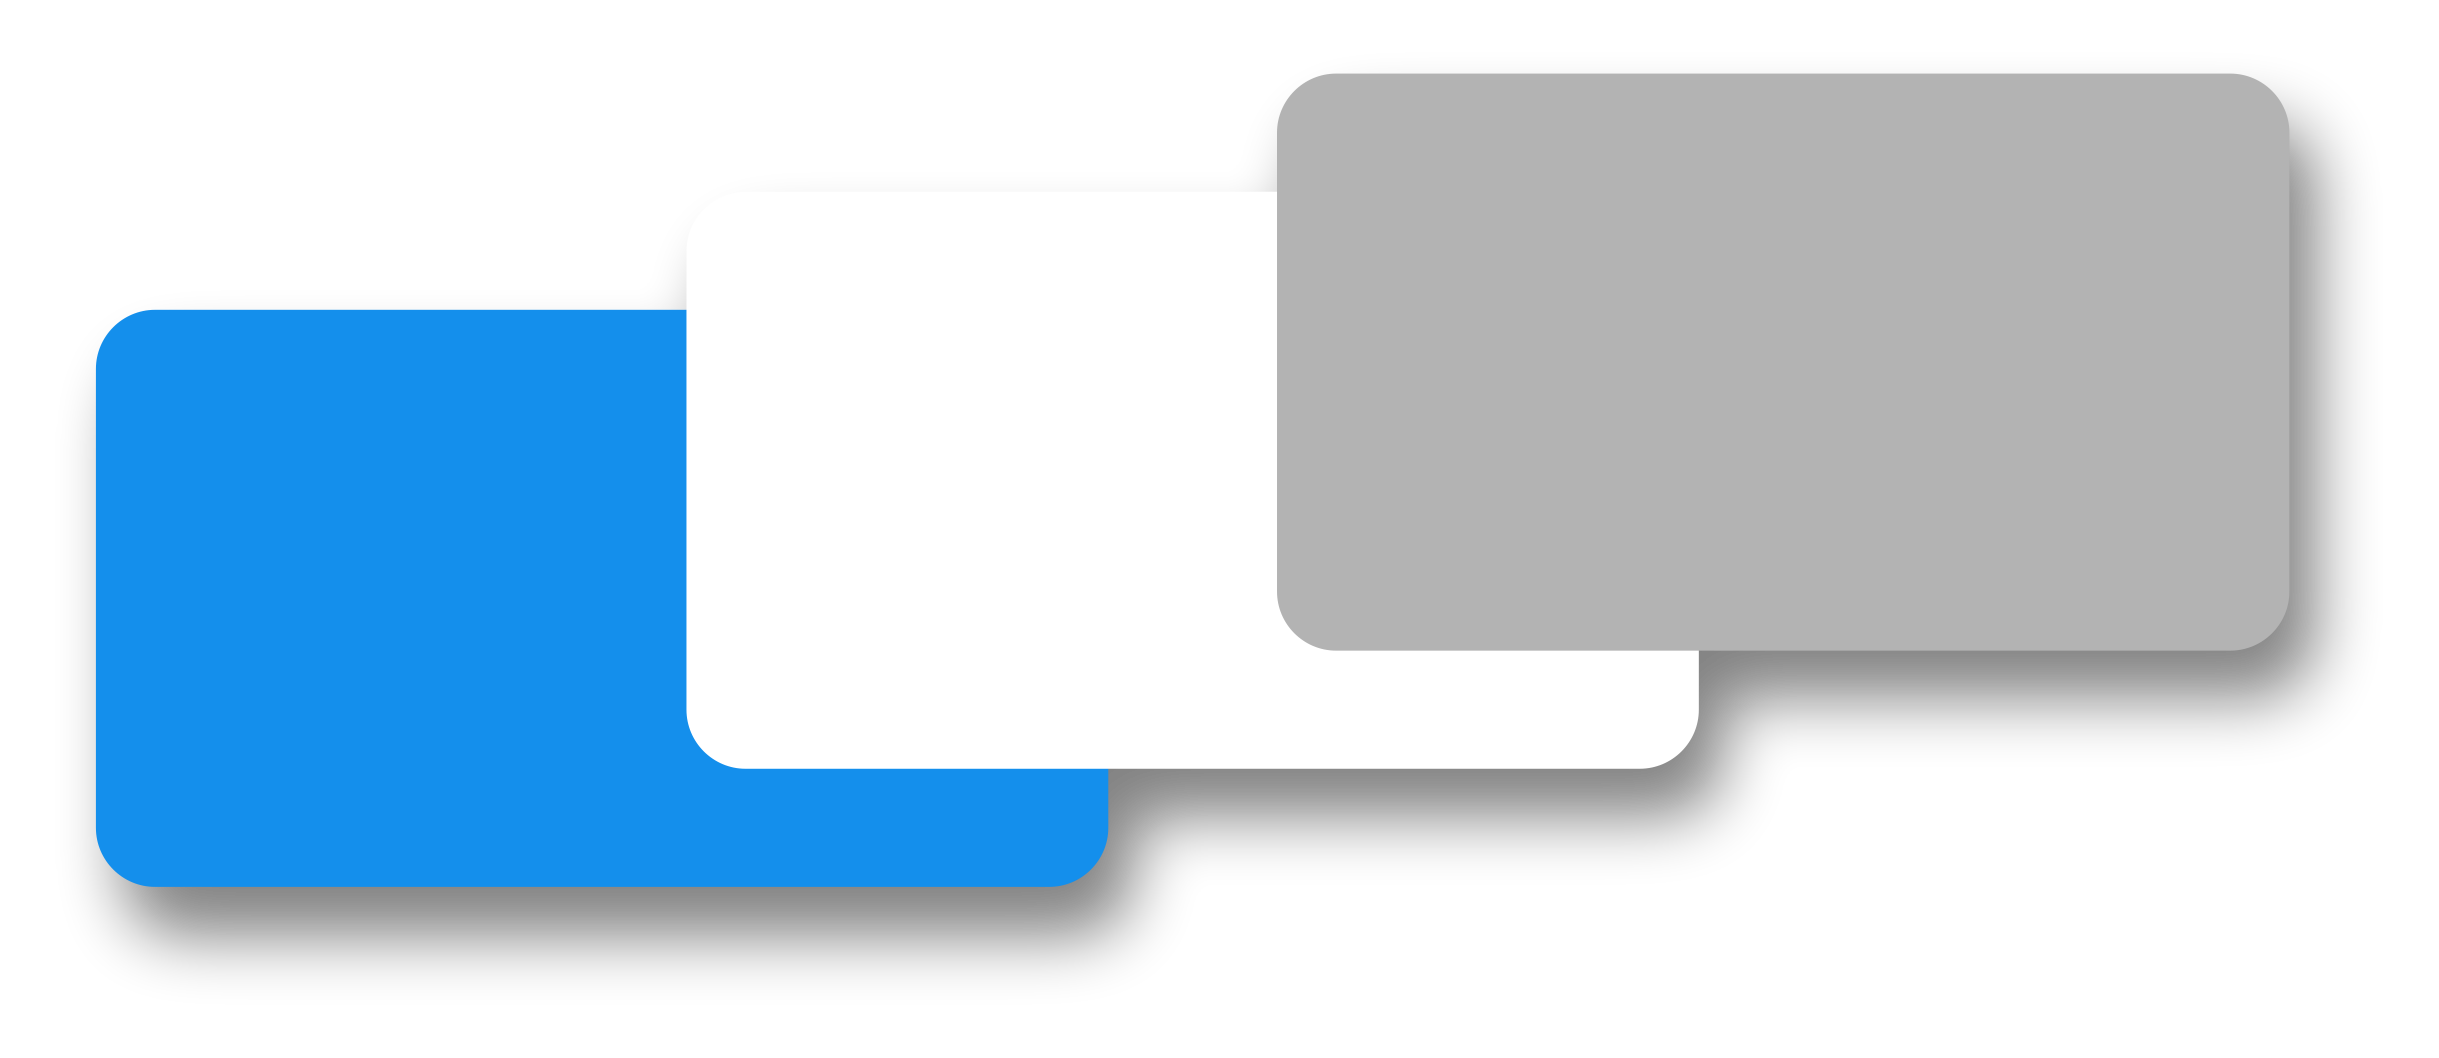 Farebné variácie zaoblených bazénov - biela, modrá a šedá